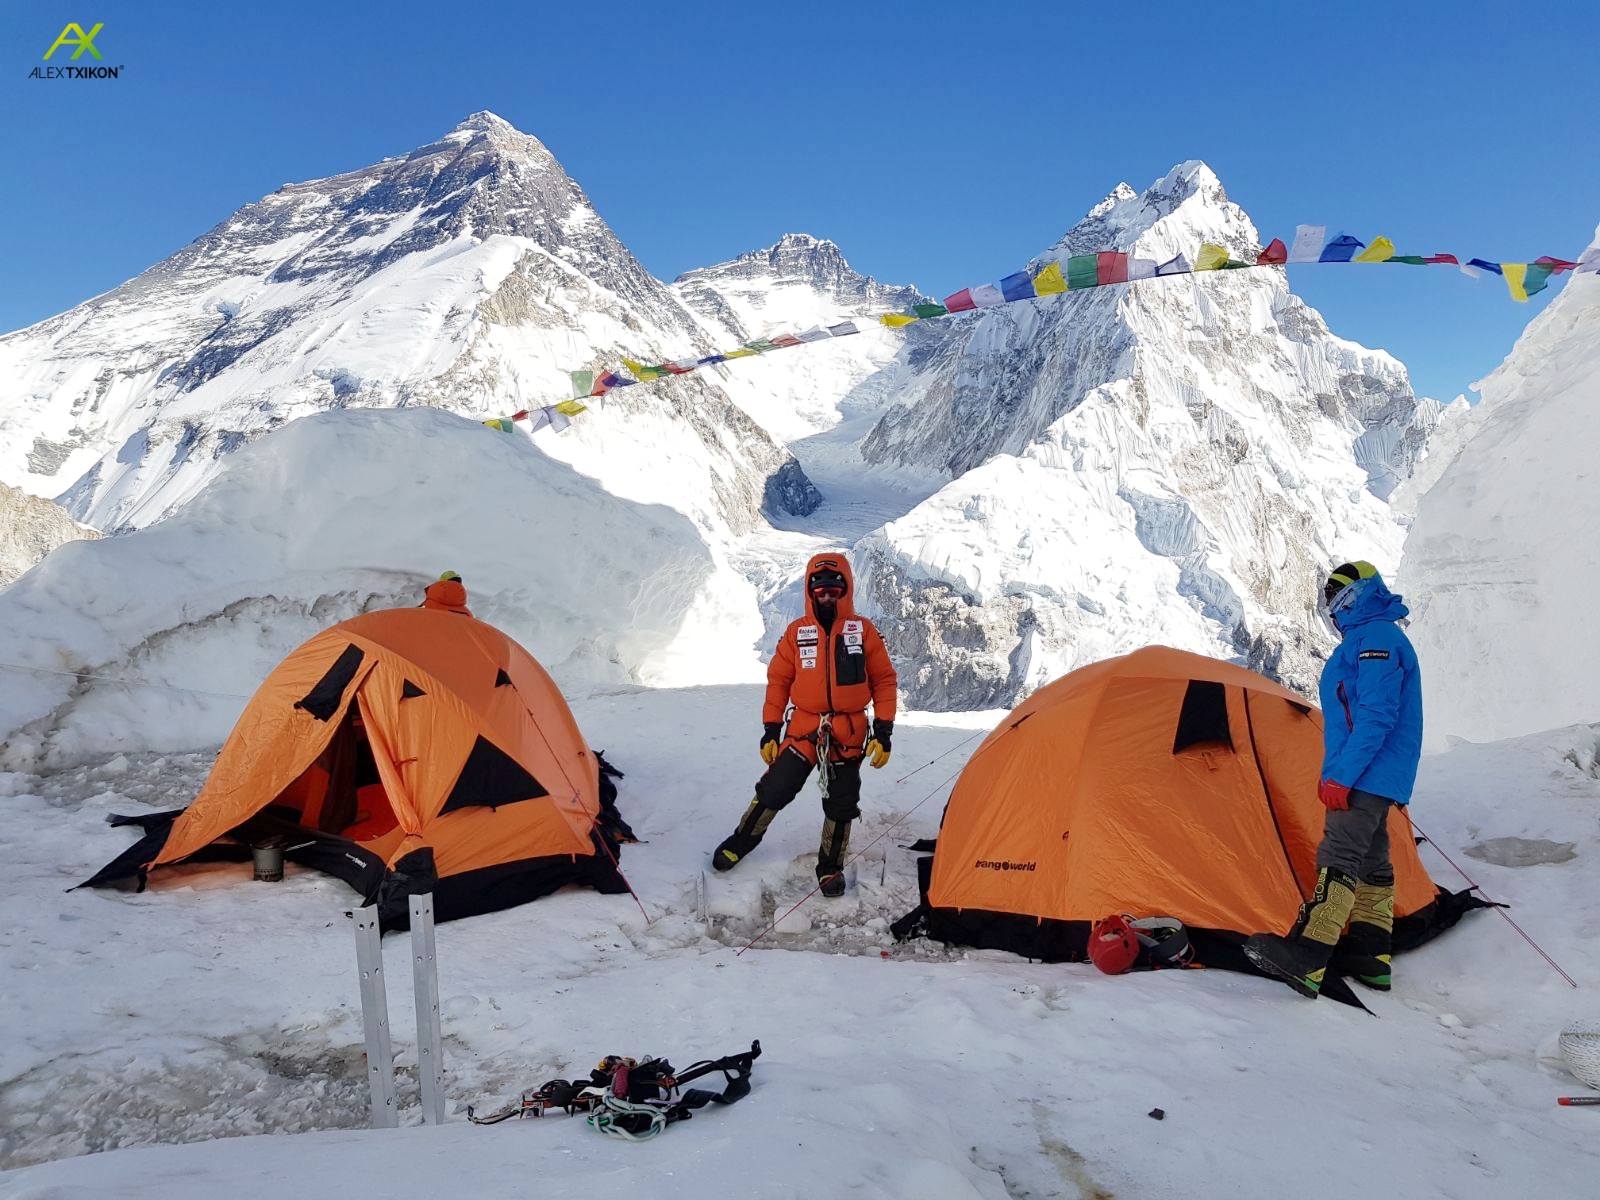 Команда Алекса Тикона на фоне Эвереста, лагерь на склоне горы Пумори, январь 2018. Фото Alex Txikon